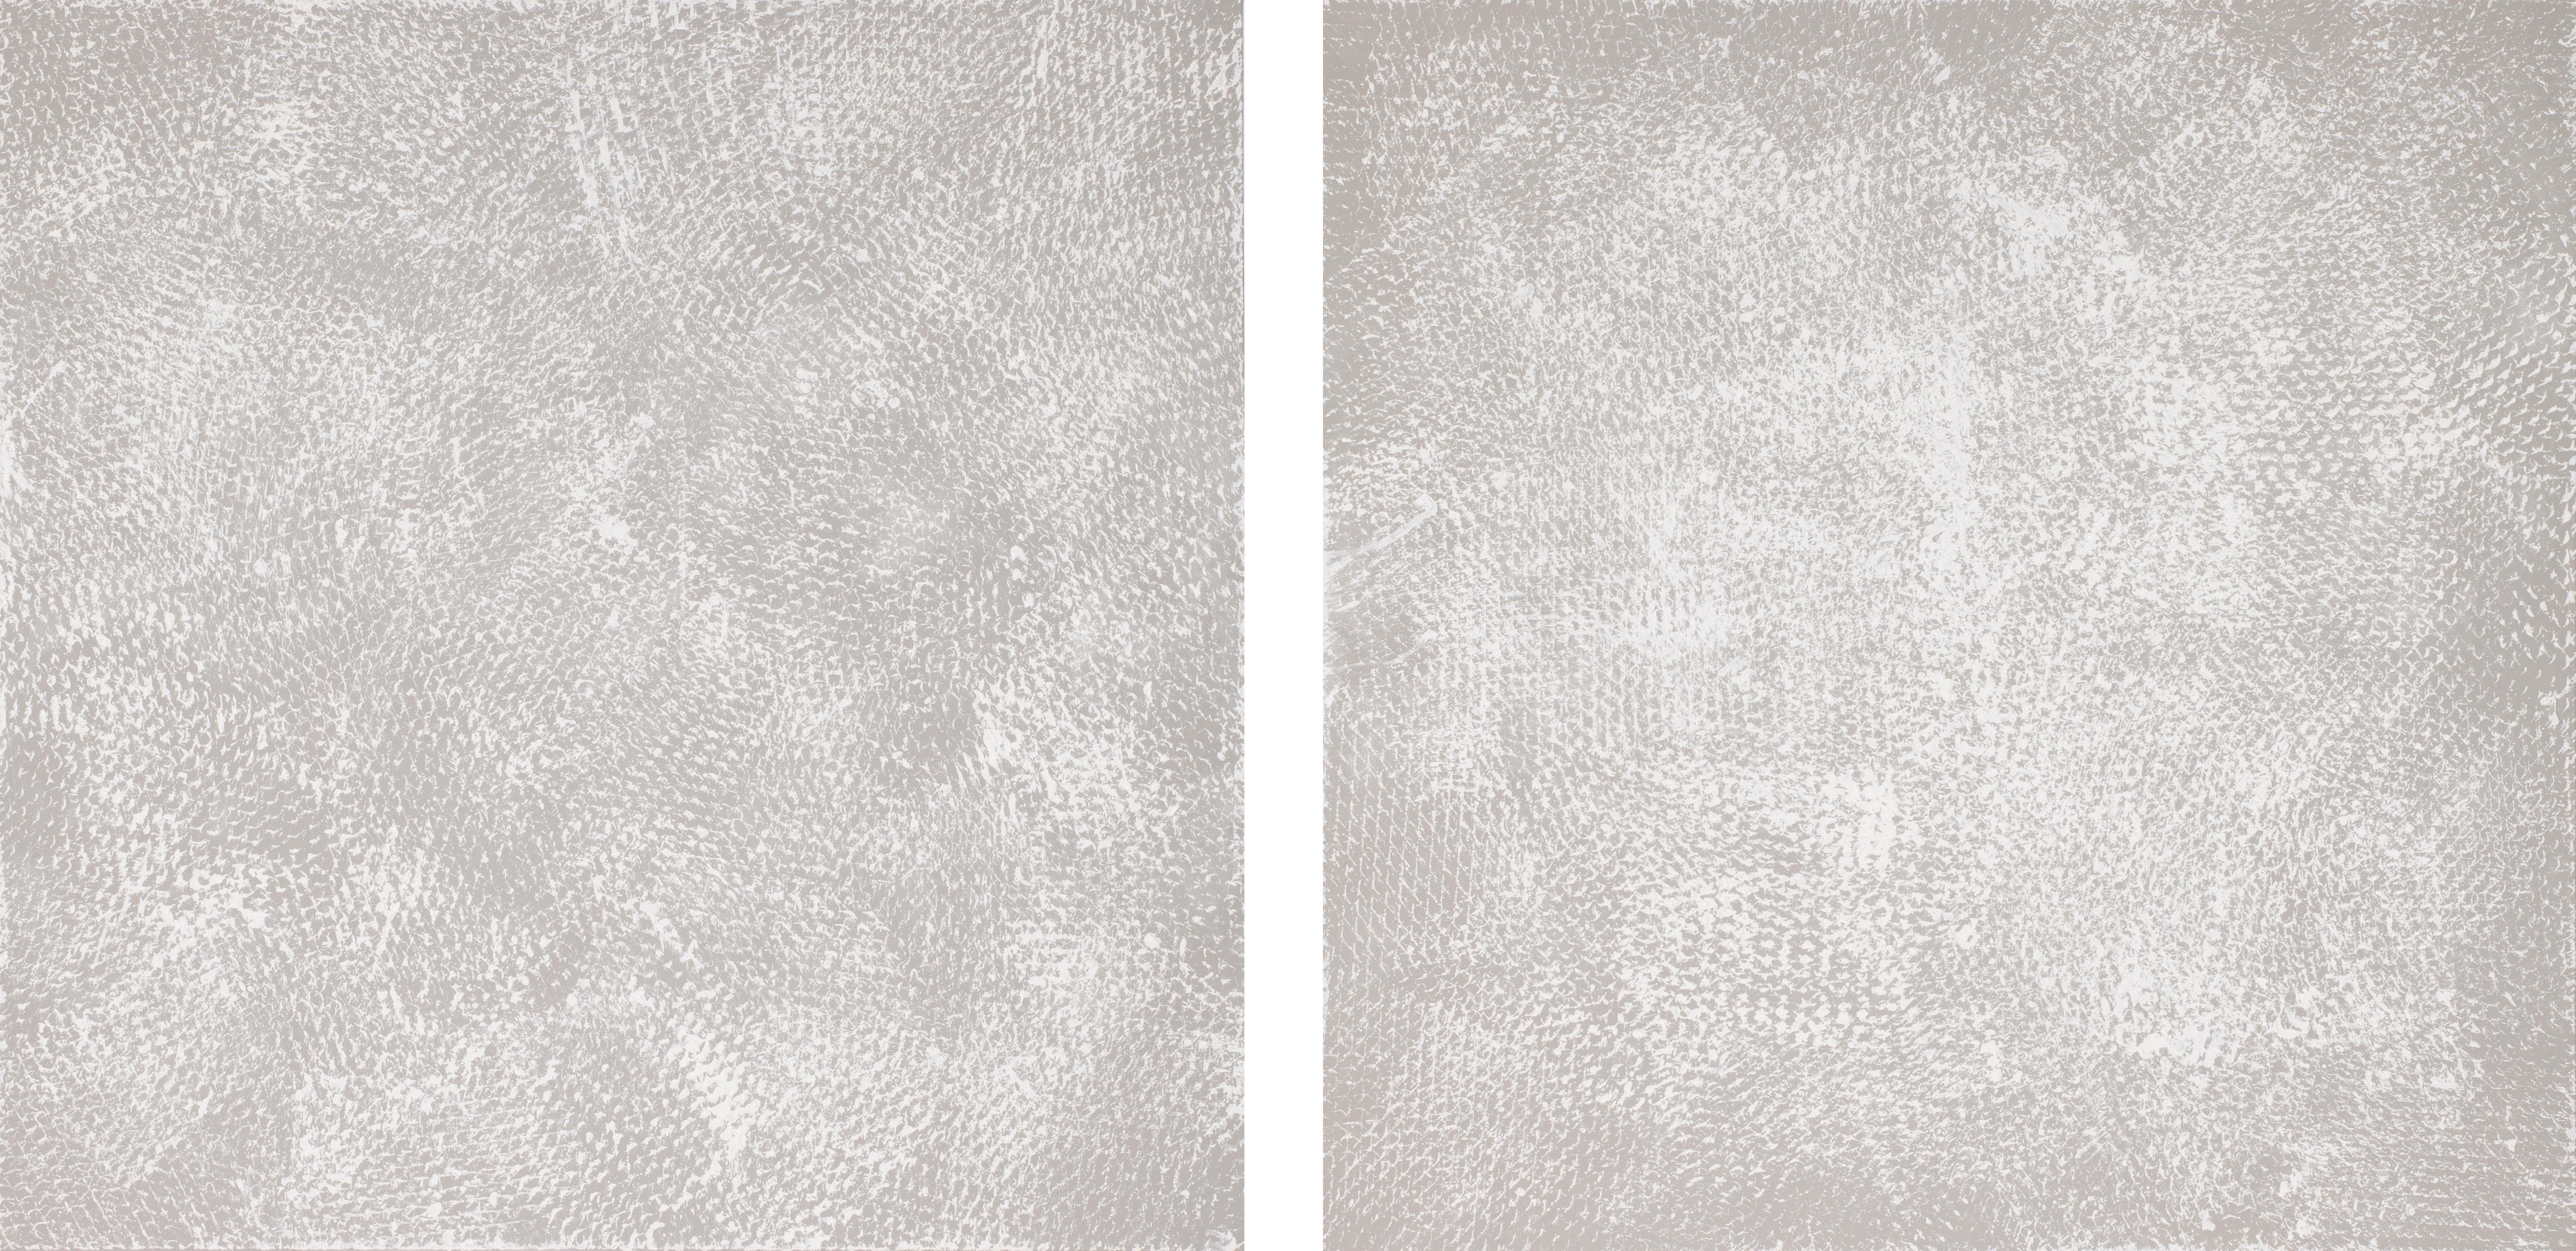 Clemens Wolf Abstract Painting – Grau und Weiß I und II, Expanded Metal Painting, Grau und Weiß. Diptychon